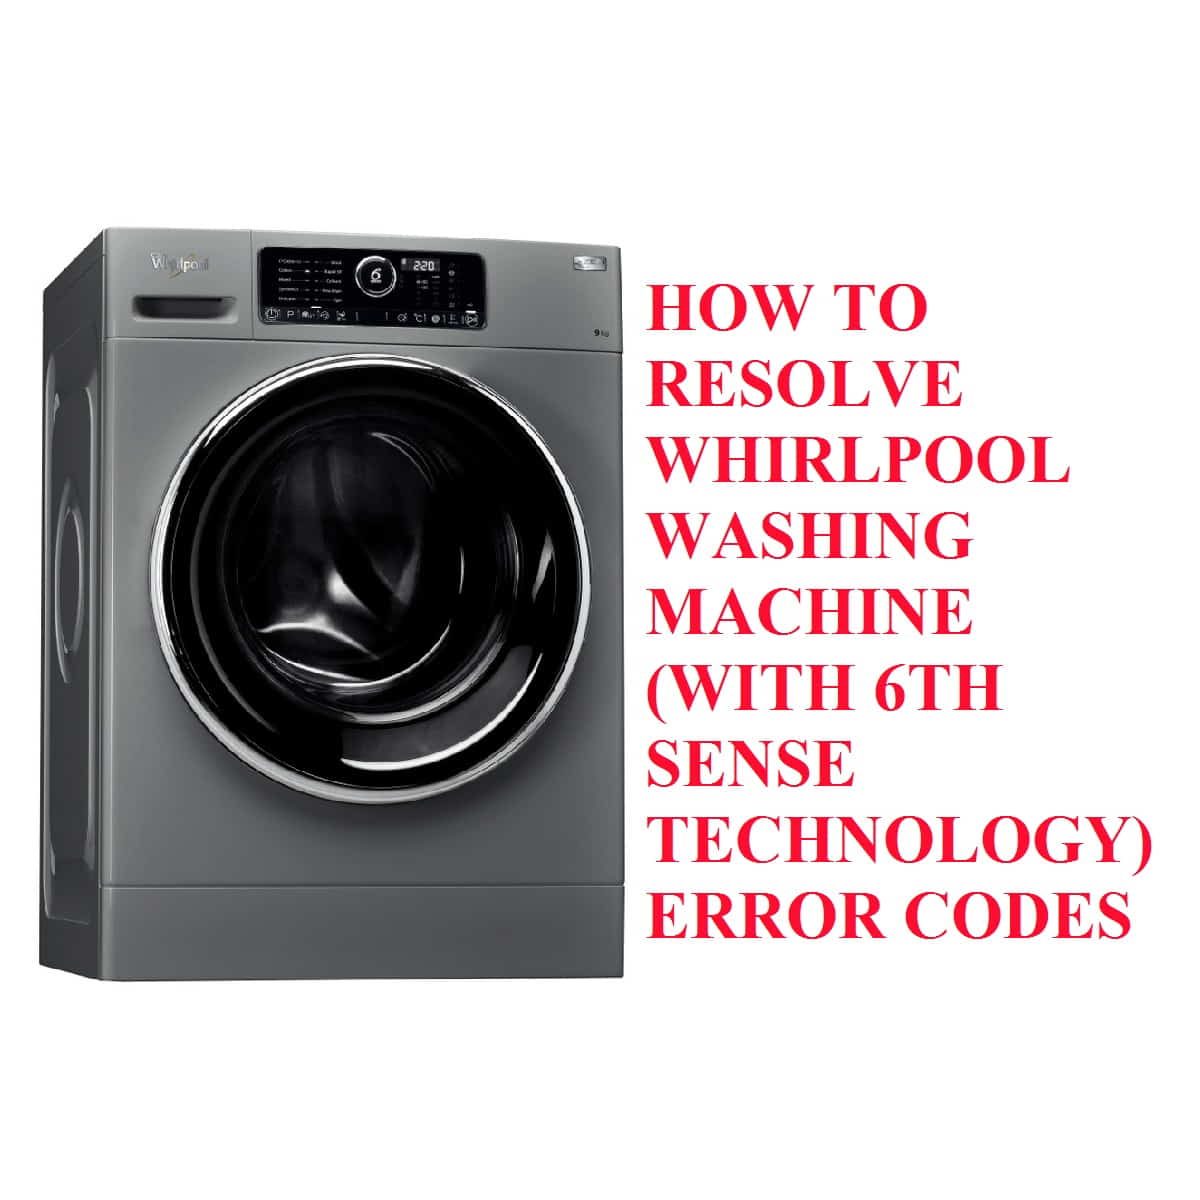 Whirlpool 6th sense washing machine error codes